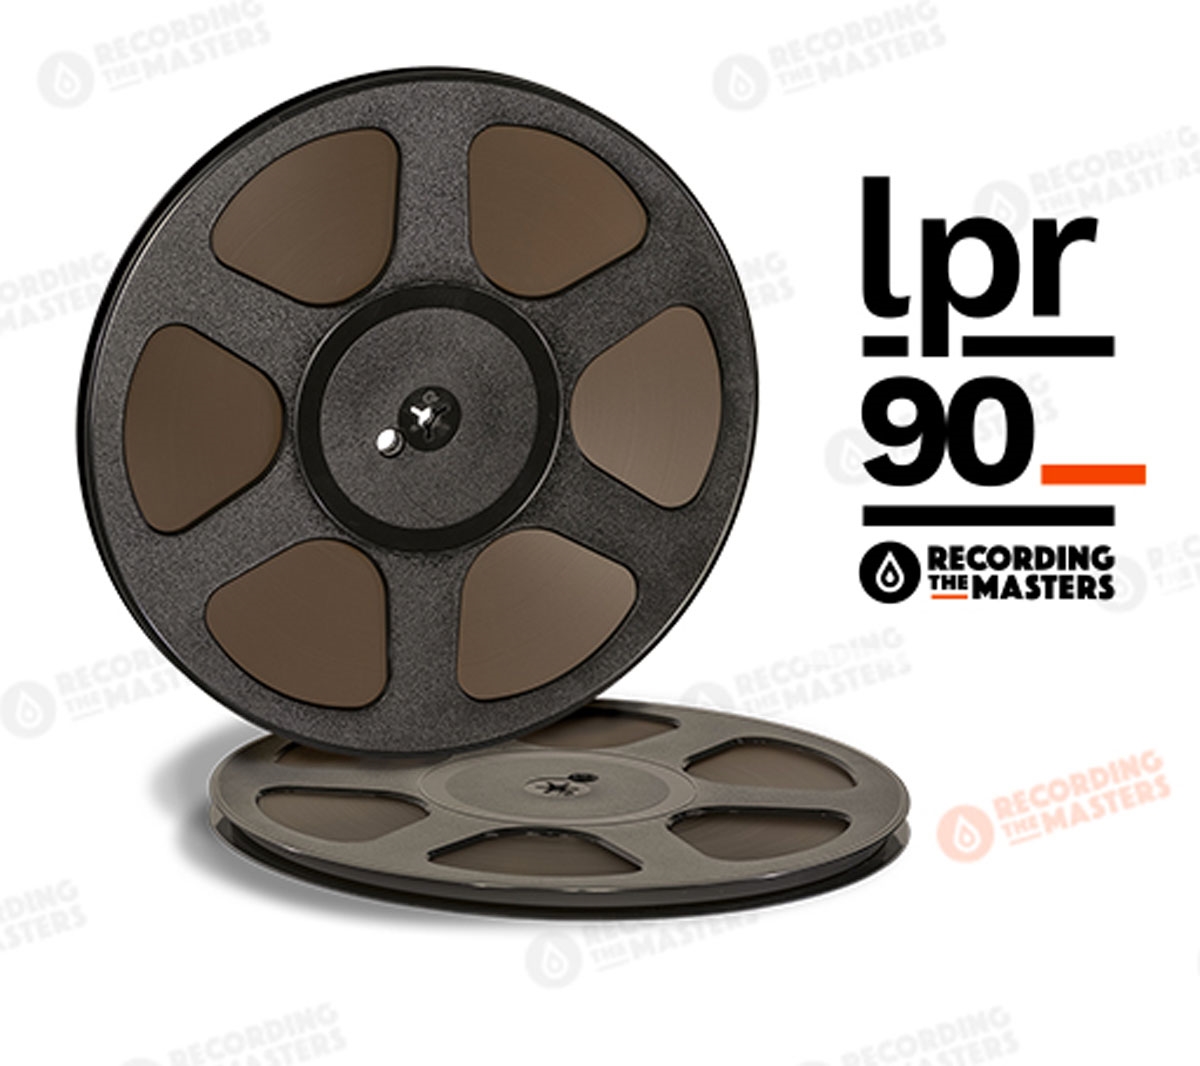 LPR90 Audio Recording Tape